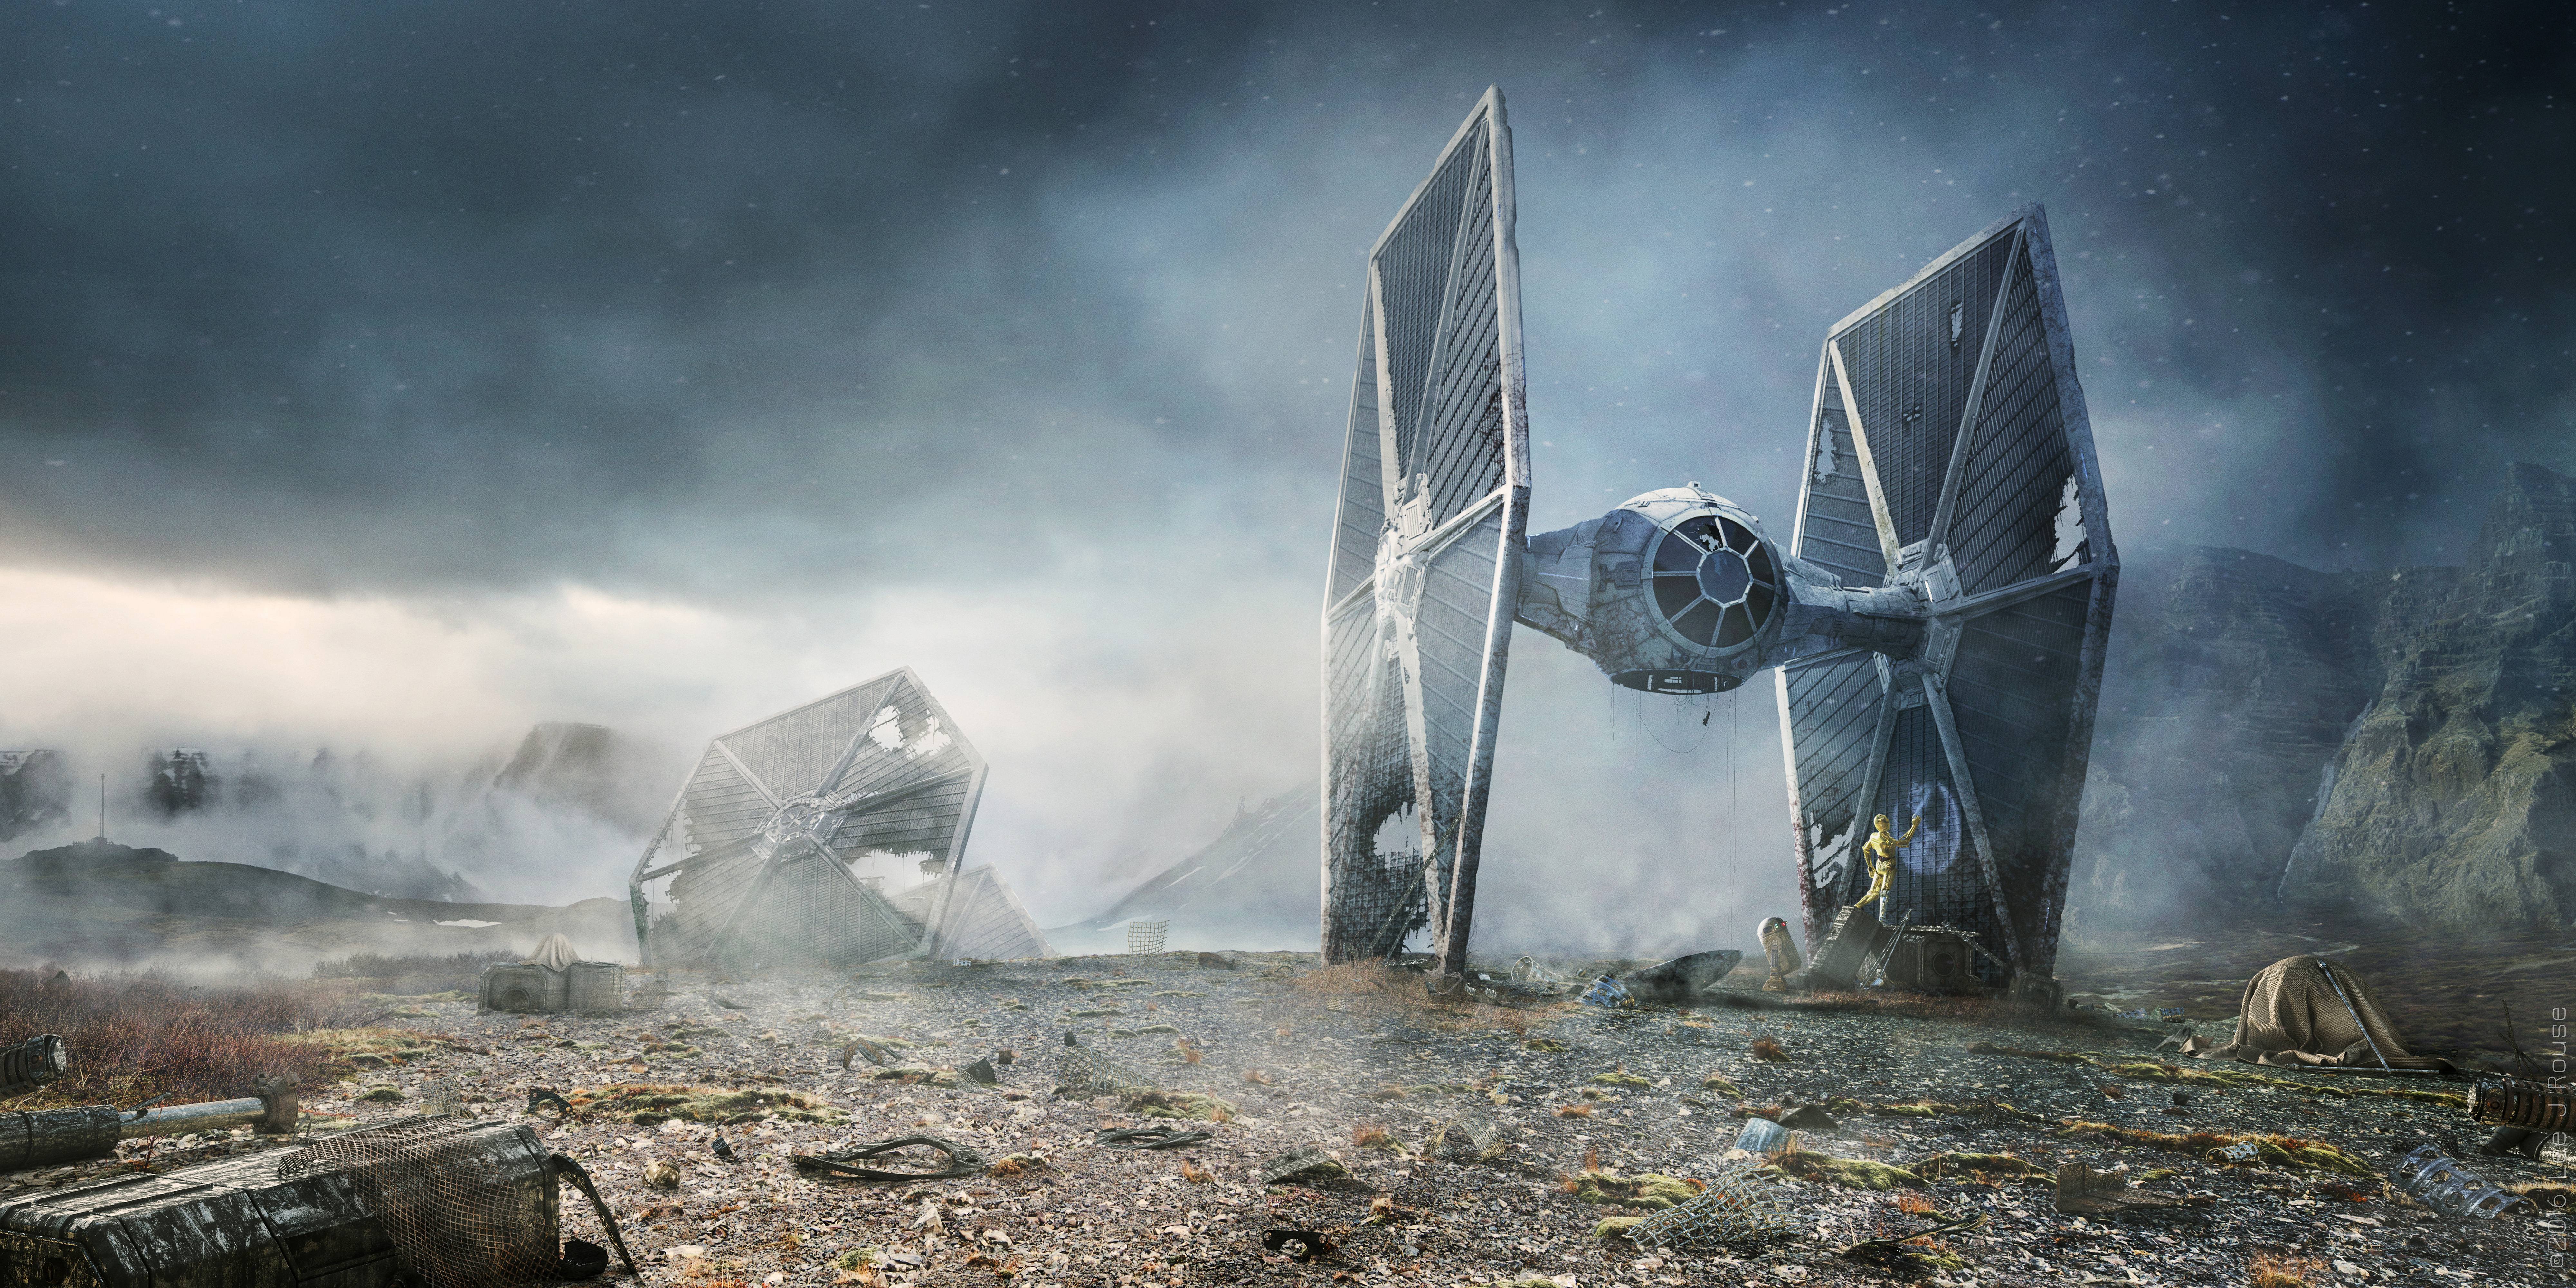 壁紙 8000x4000 スター ウォーズ 映画 C 3po Star Wars Rebel Droids Lee Rouse Tie Fighter R2 D2 ファンタジー ダウンロード 写真